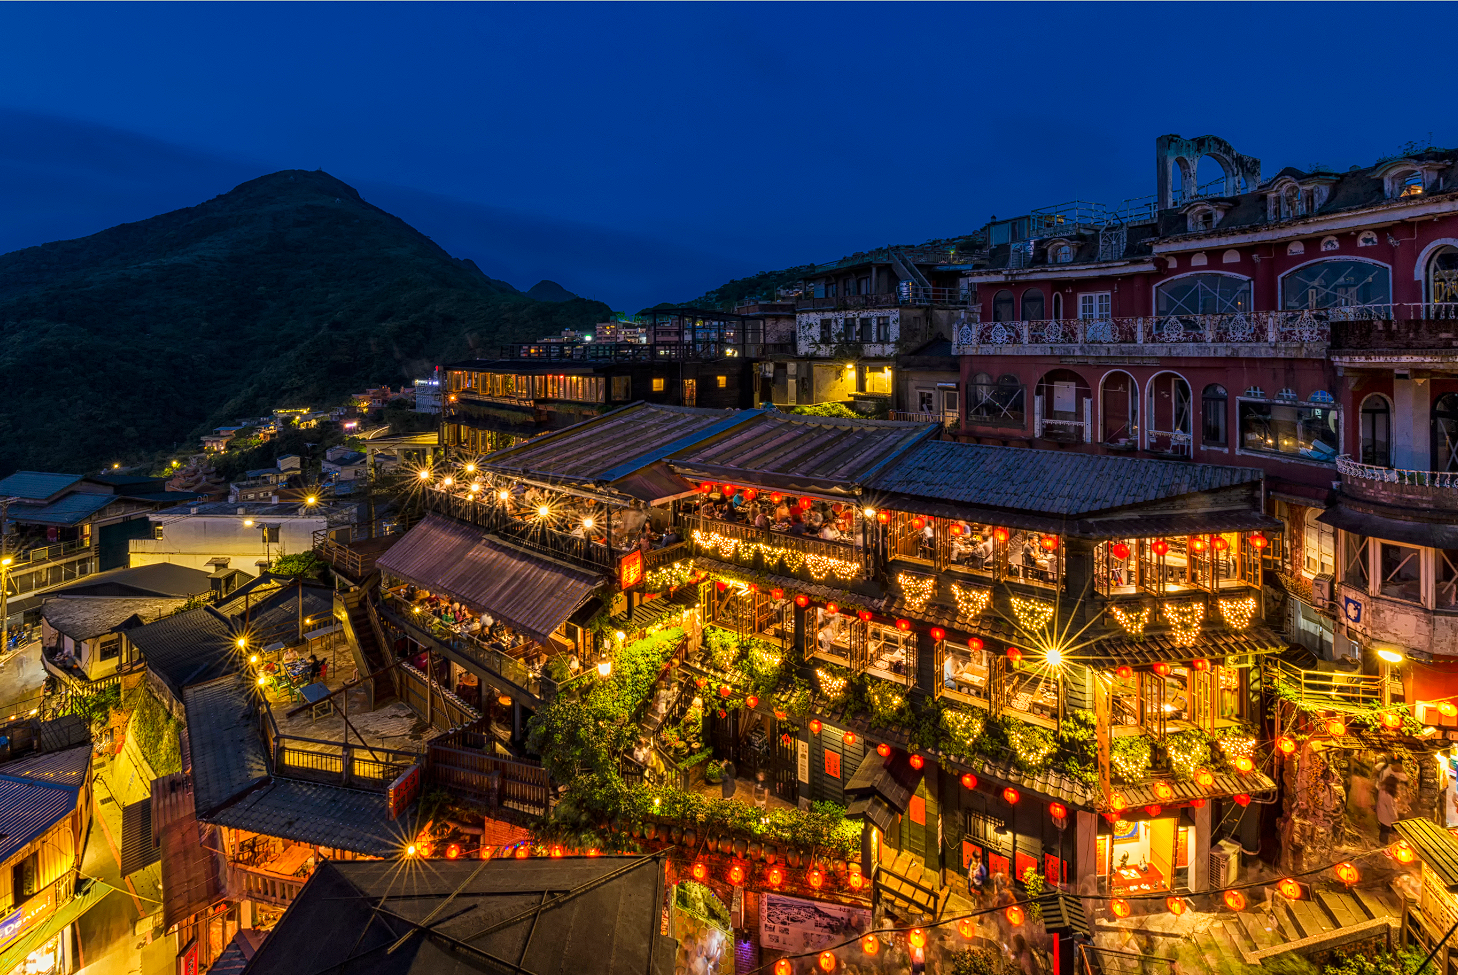 The old street Jiufen: Pengalaman Berkesan dari Sejarah dan Budaya Taiwan